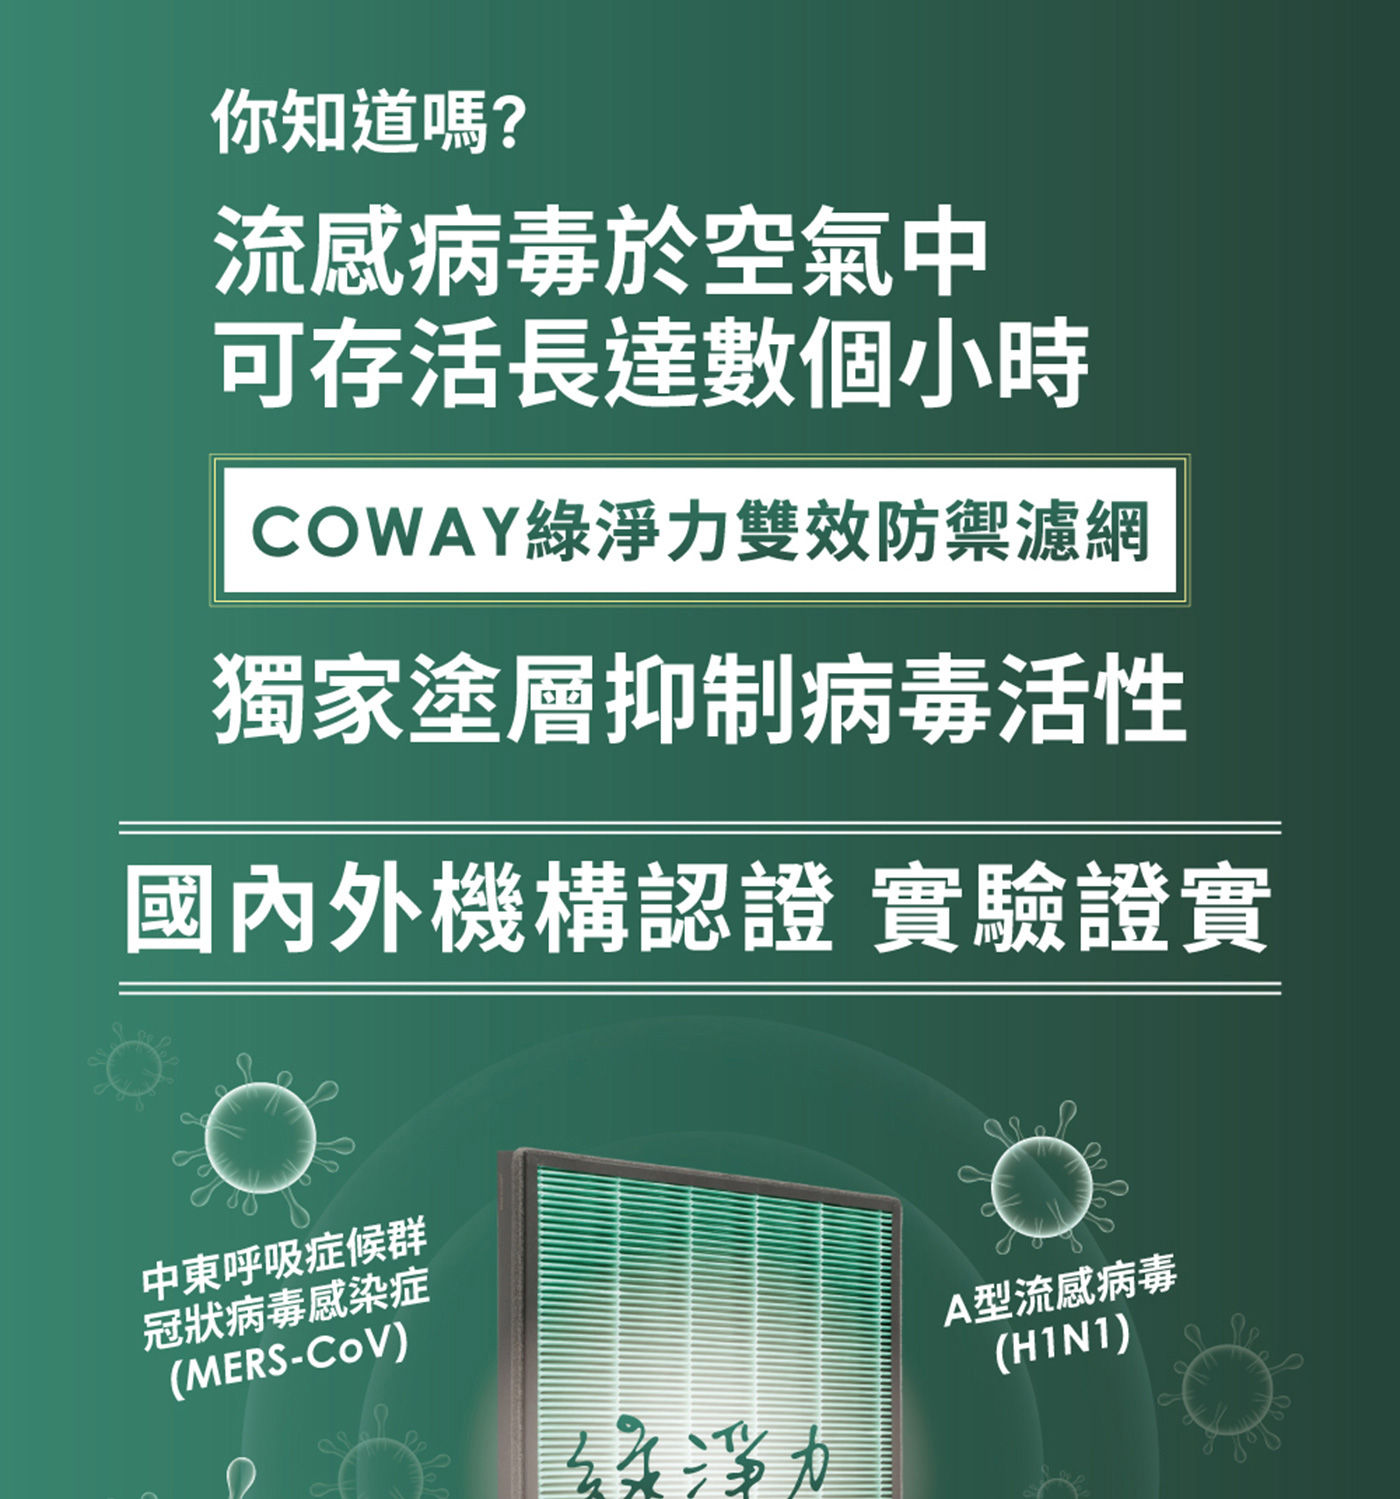 Coway 空氣清淨機 獨家塗層抑制病毒活性